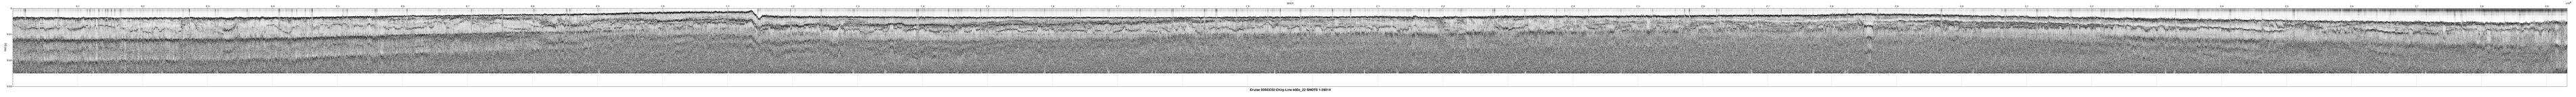 00SCC02 b00c_22 seismic profile image